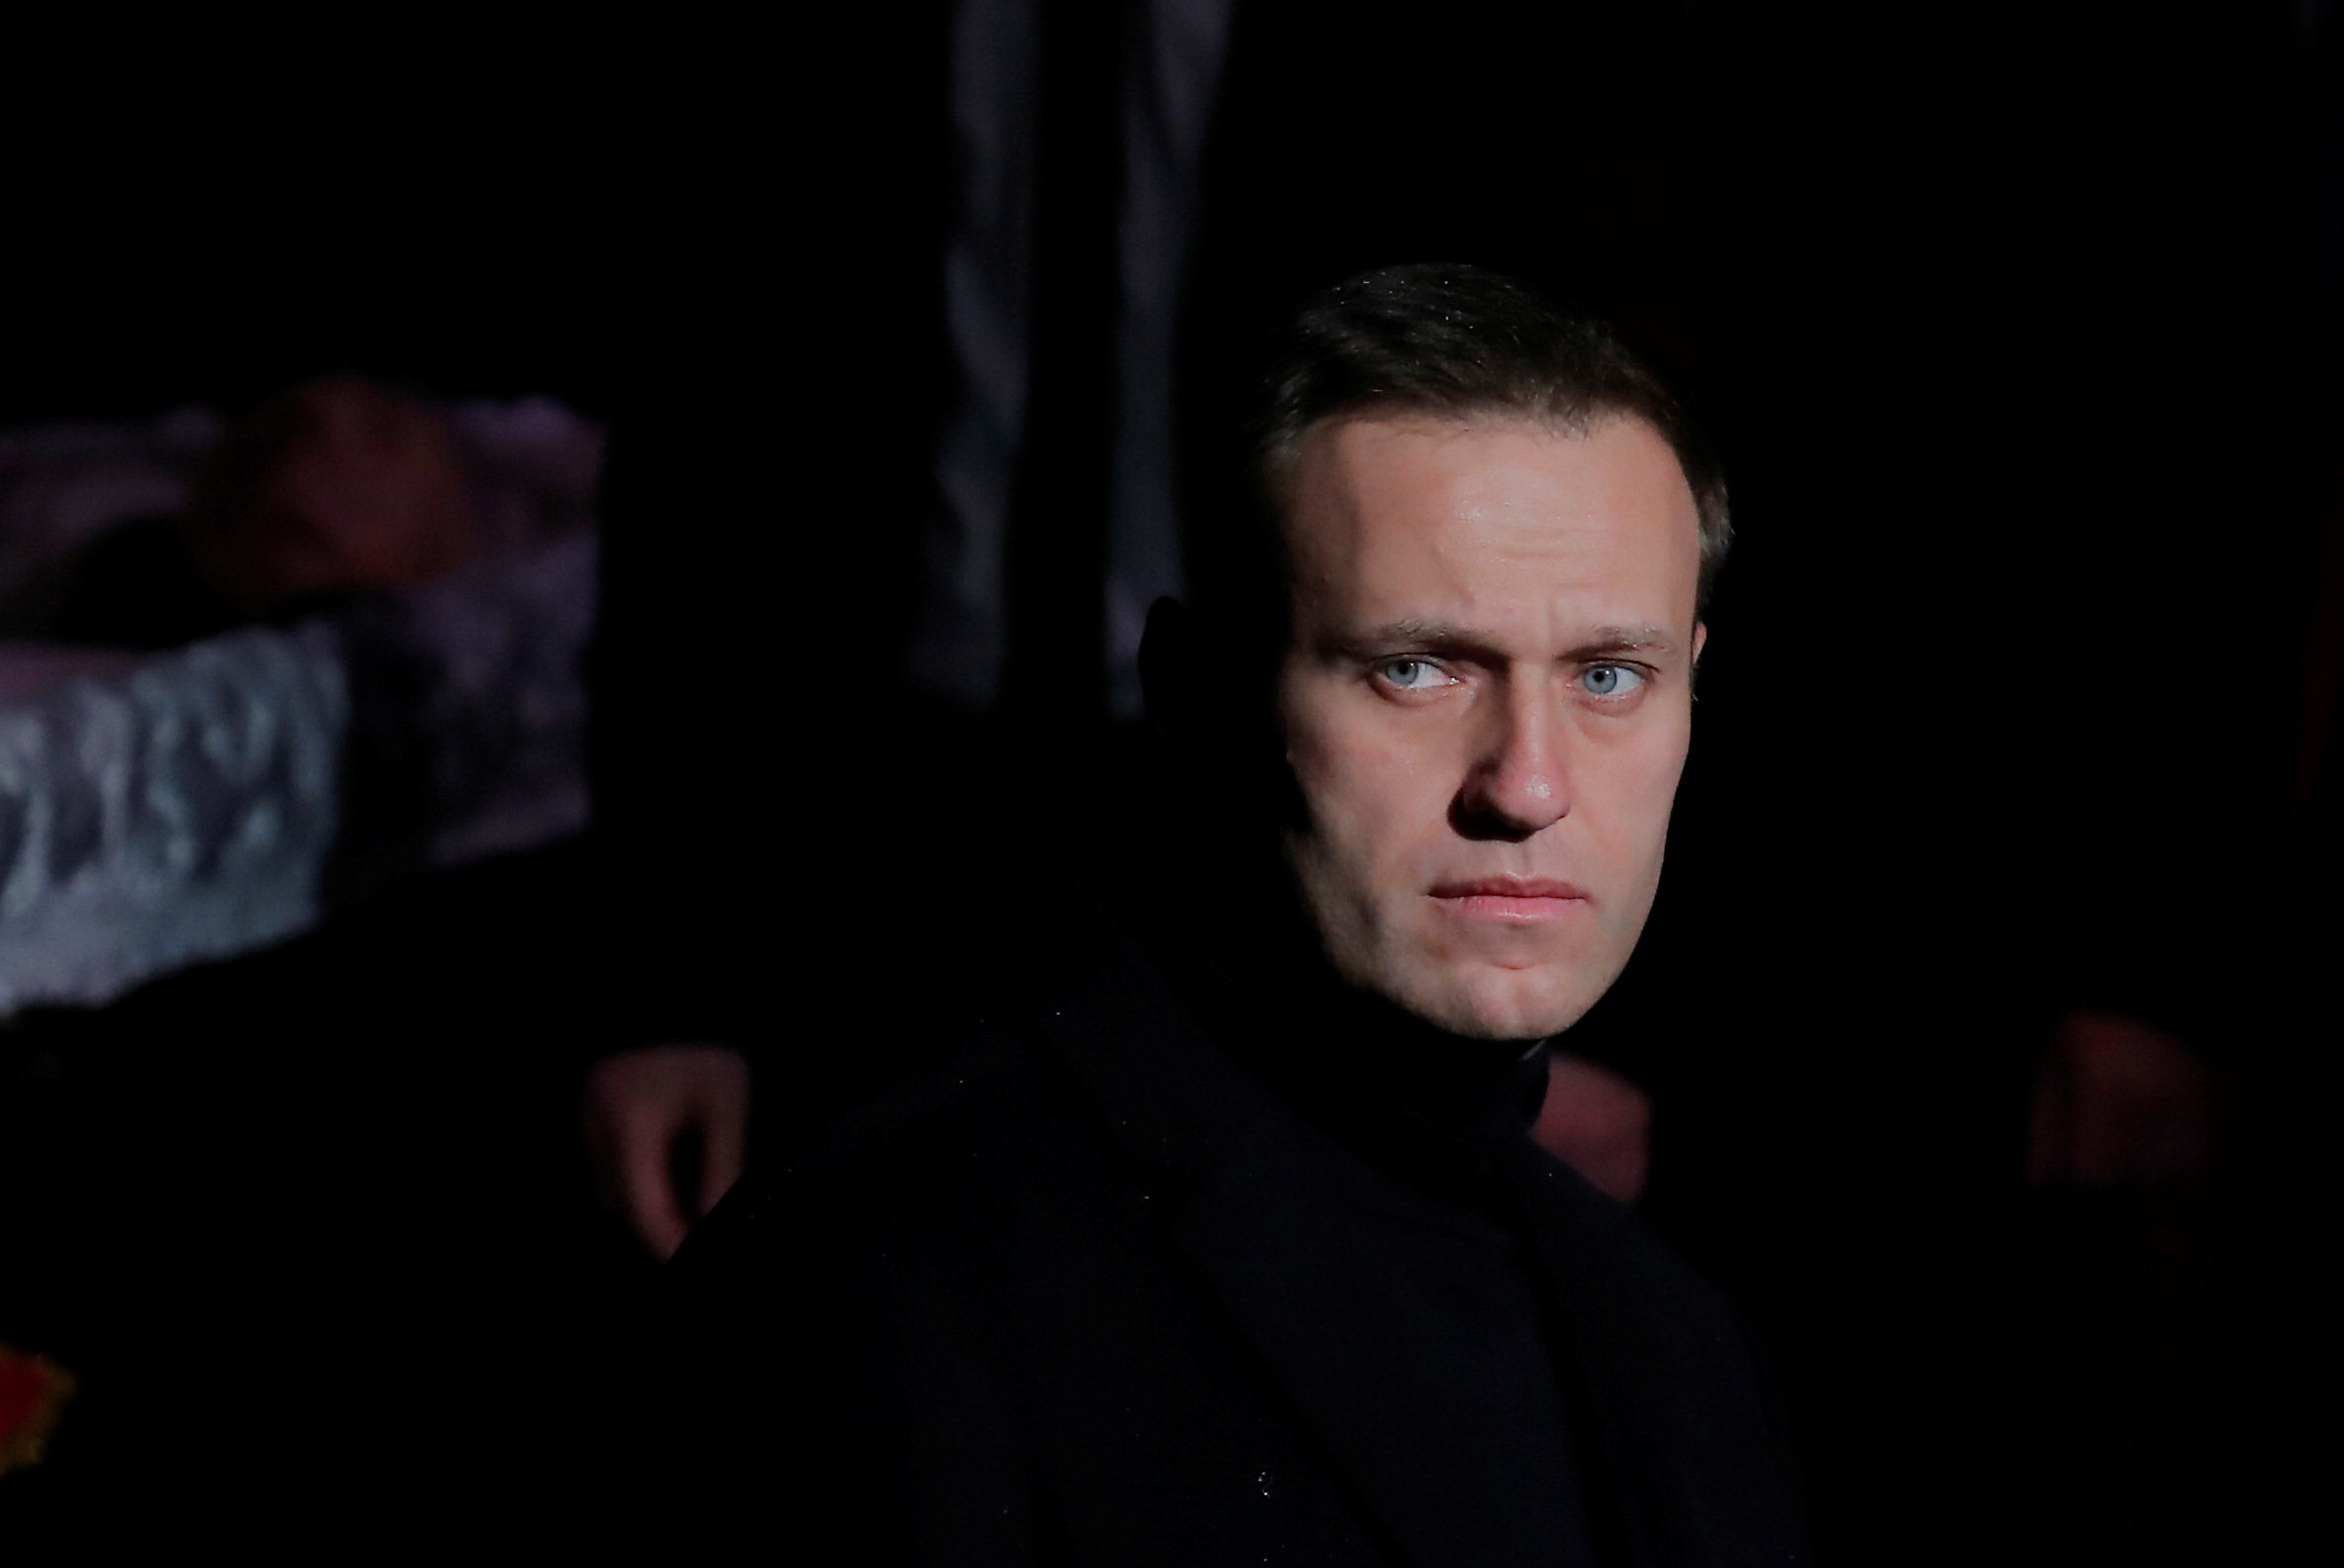 Alexeï Navalny critique le Kremlin depuis longtemps... S'il a été empoisonné, pourquoi maintenant ?